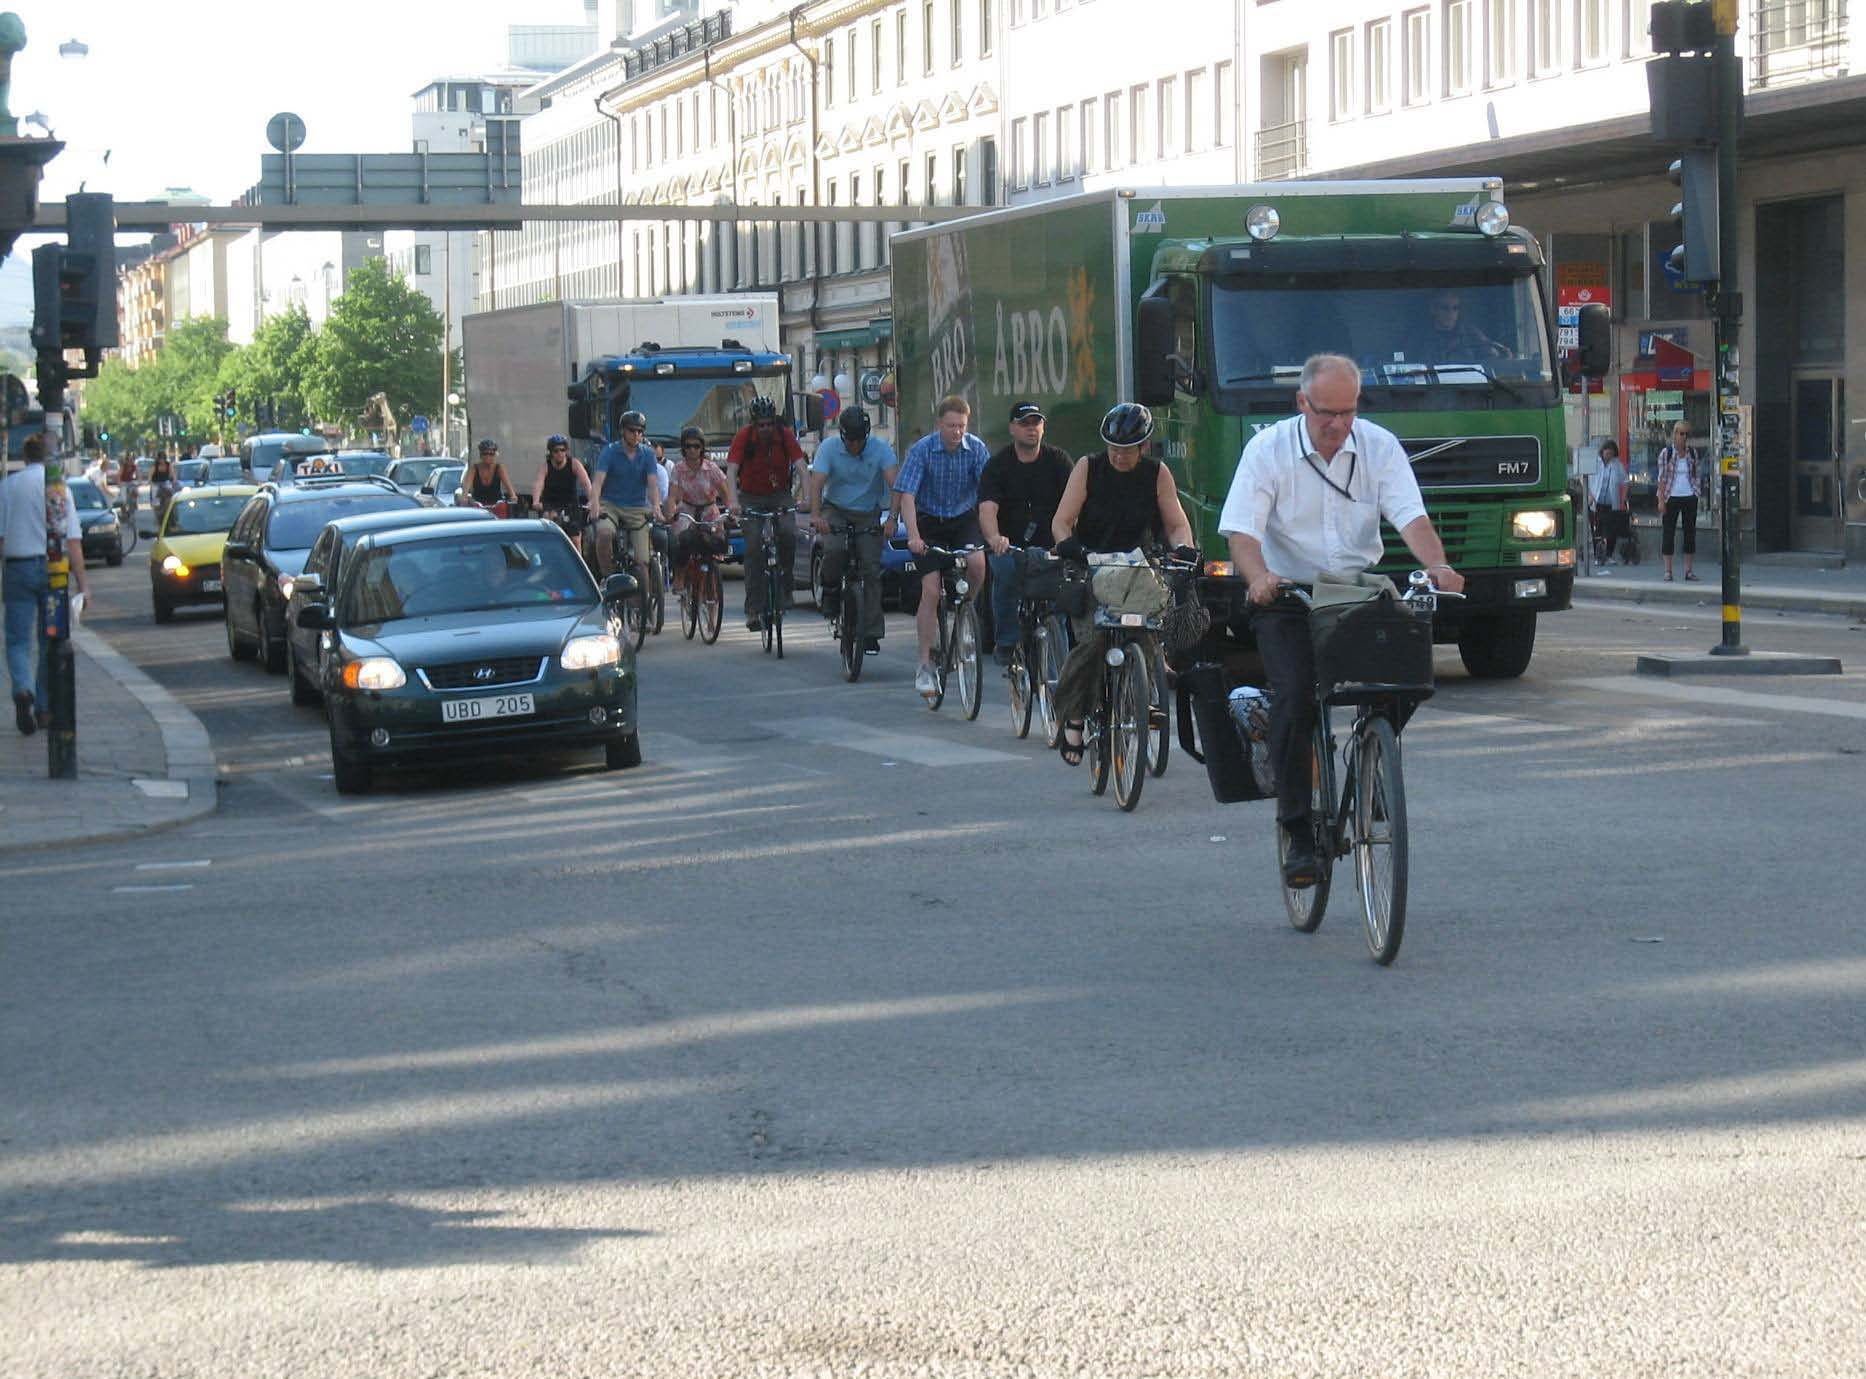 Säkerhet och trygghet Riktlinjer för när, var och hur hastighetssäkring av gång- och cykelpassager skall genomföras föreslås tas fram och utsatta platser åtgärdas.